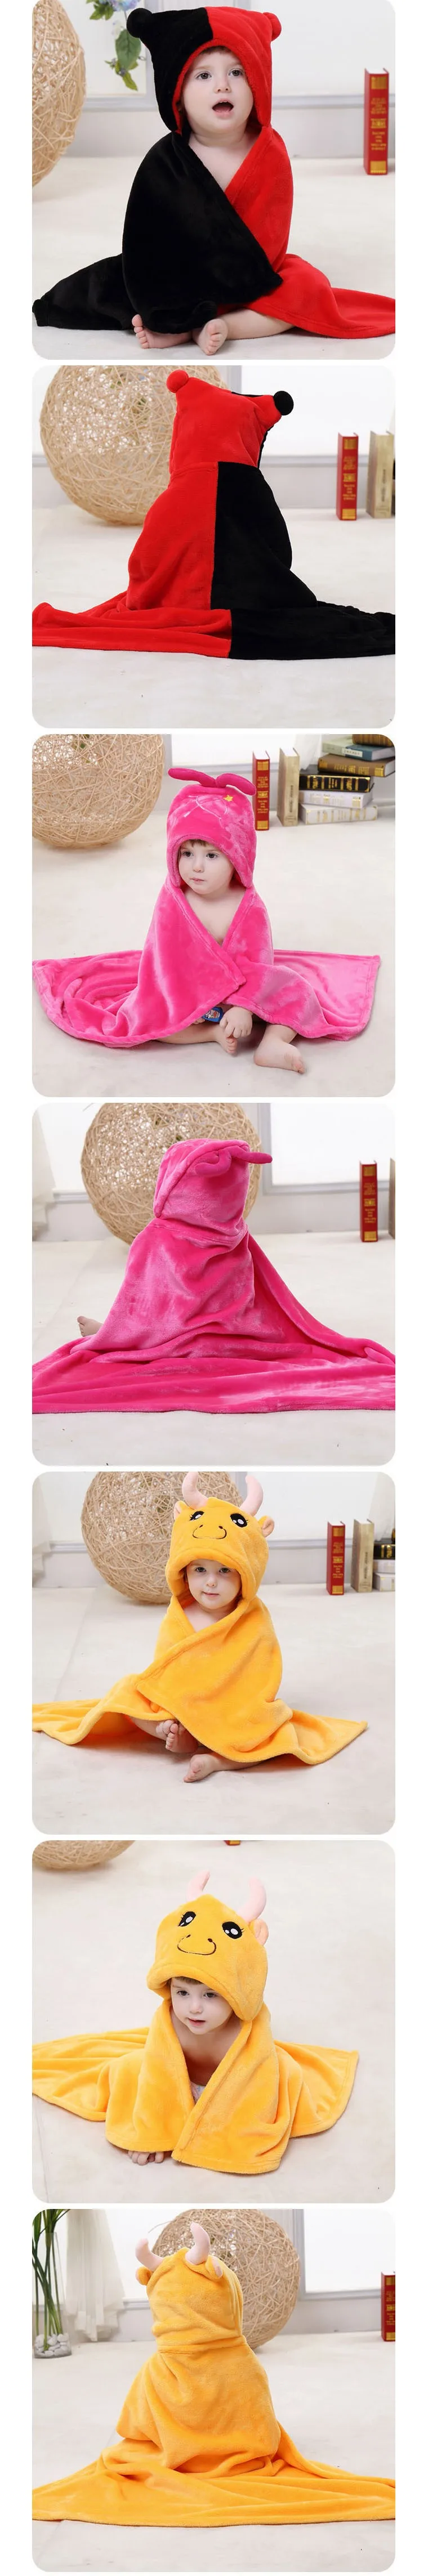 Новое созвездие держать младенческие фланелевые одеяла плащ новое полотенце младенца было/детское одеяло новорожденного одеяло банное детское полотенце